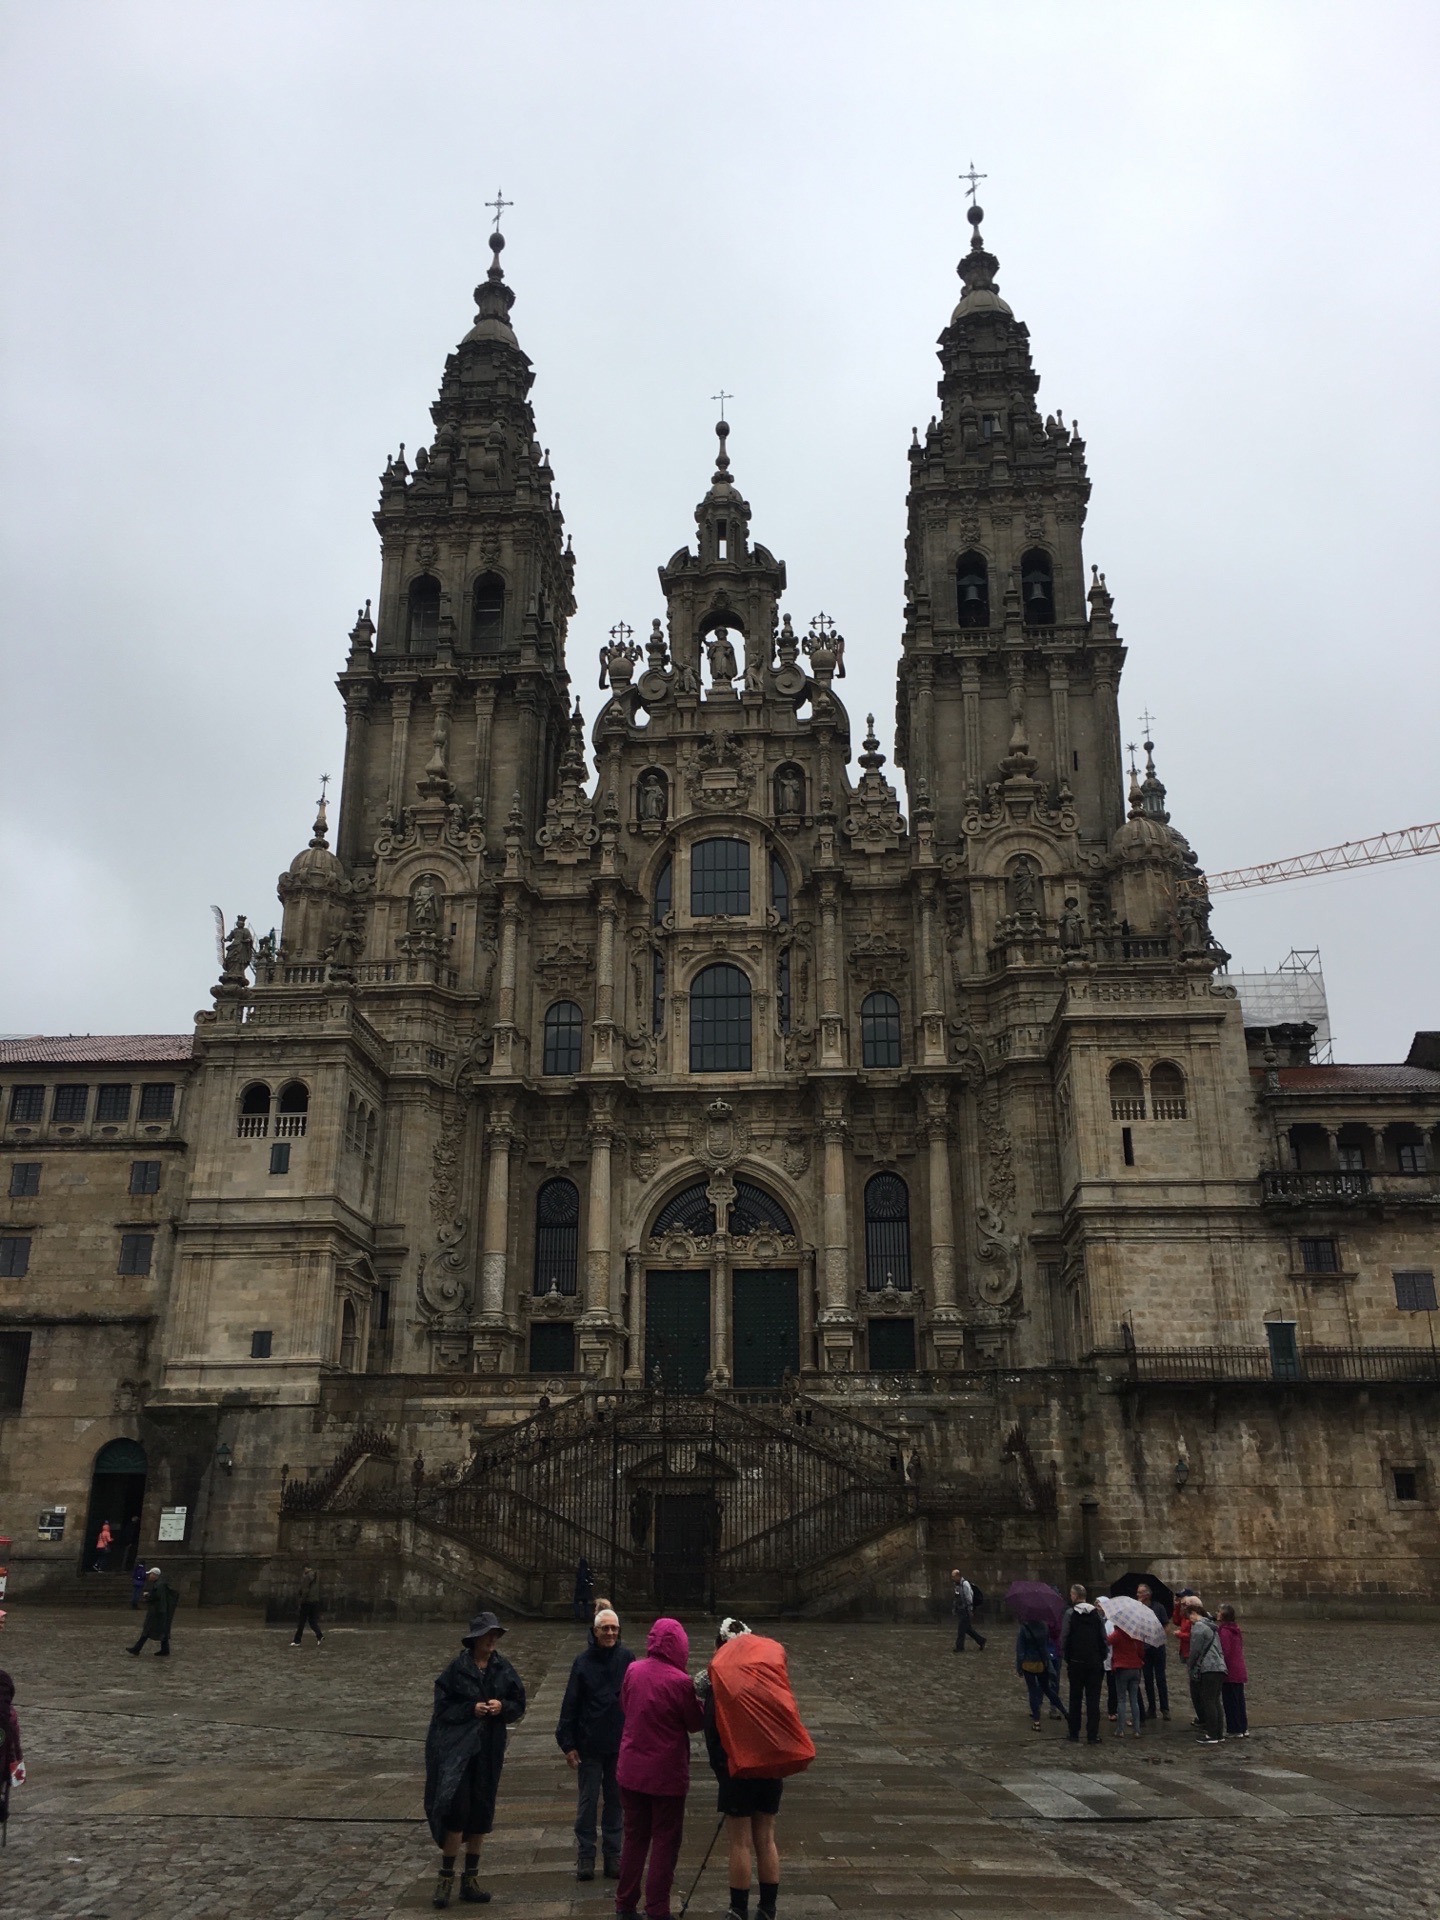 西班牙圣地亚哥德孔波斯特拉古城，相传耶稣十二门徒之一的圣雅各安葬于此，是天主教朝圣胜地之一。是欧洲第